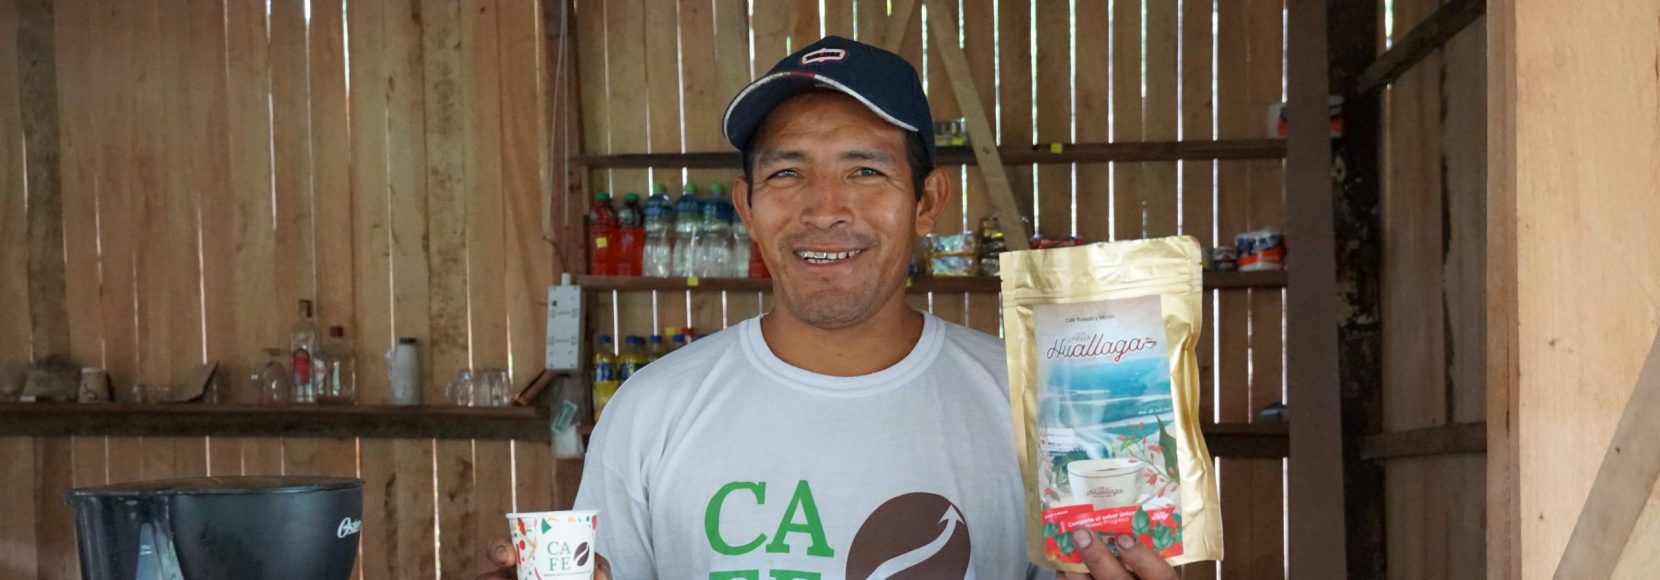 Cruz Juanan stands in his coffee shop in Peru